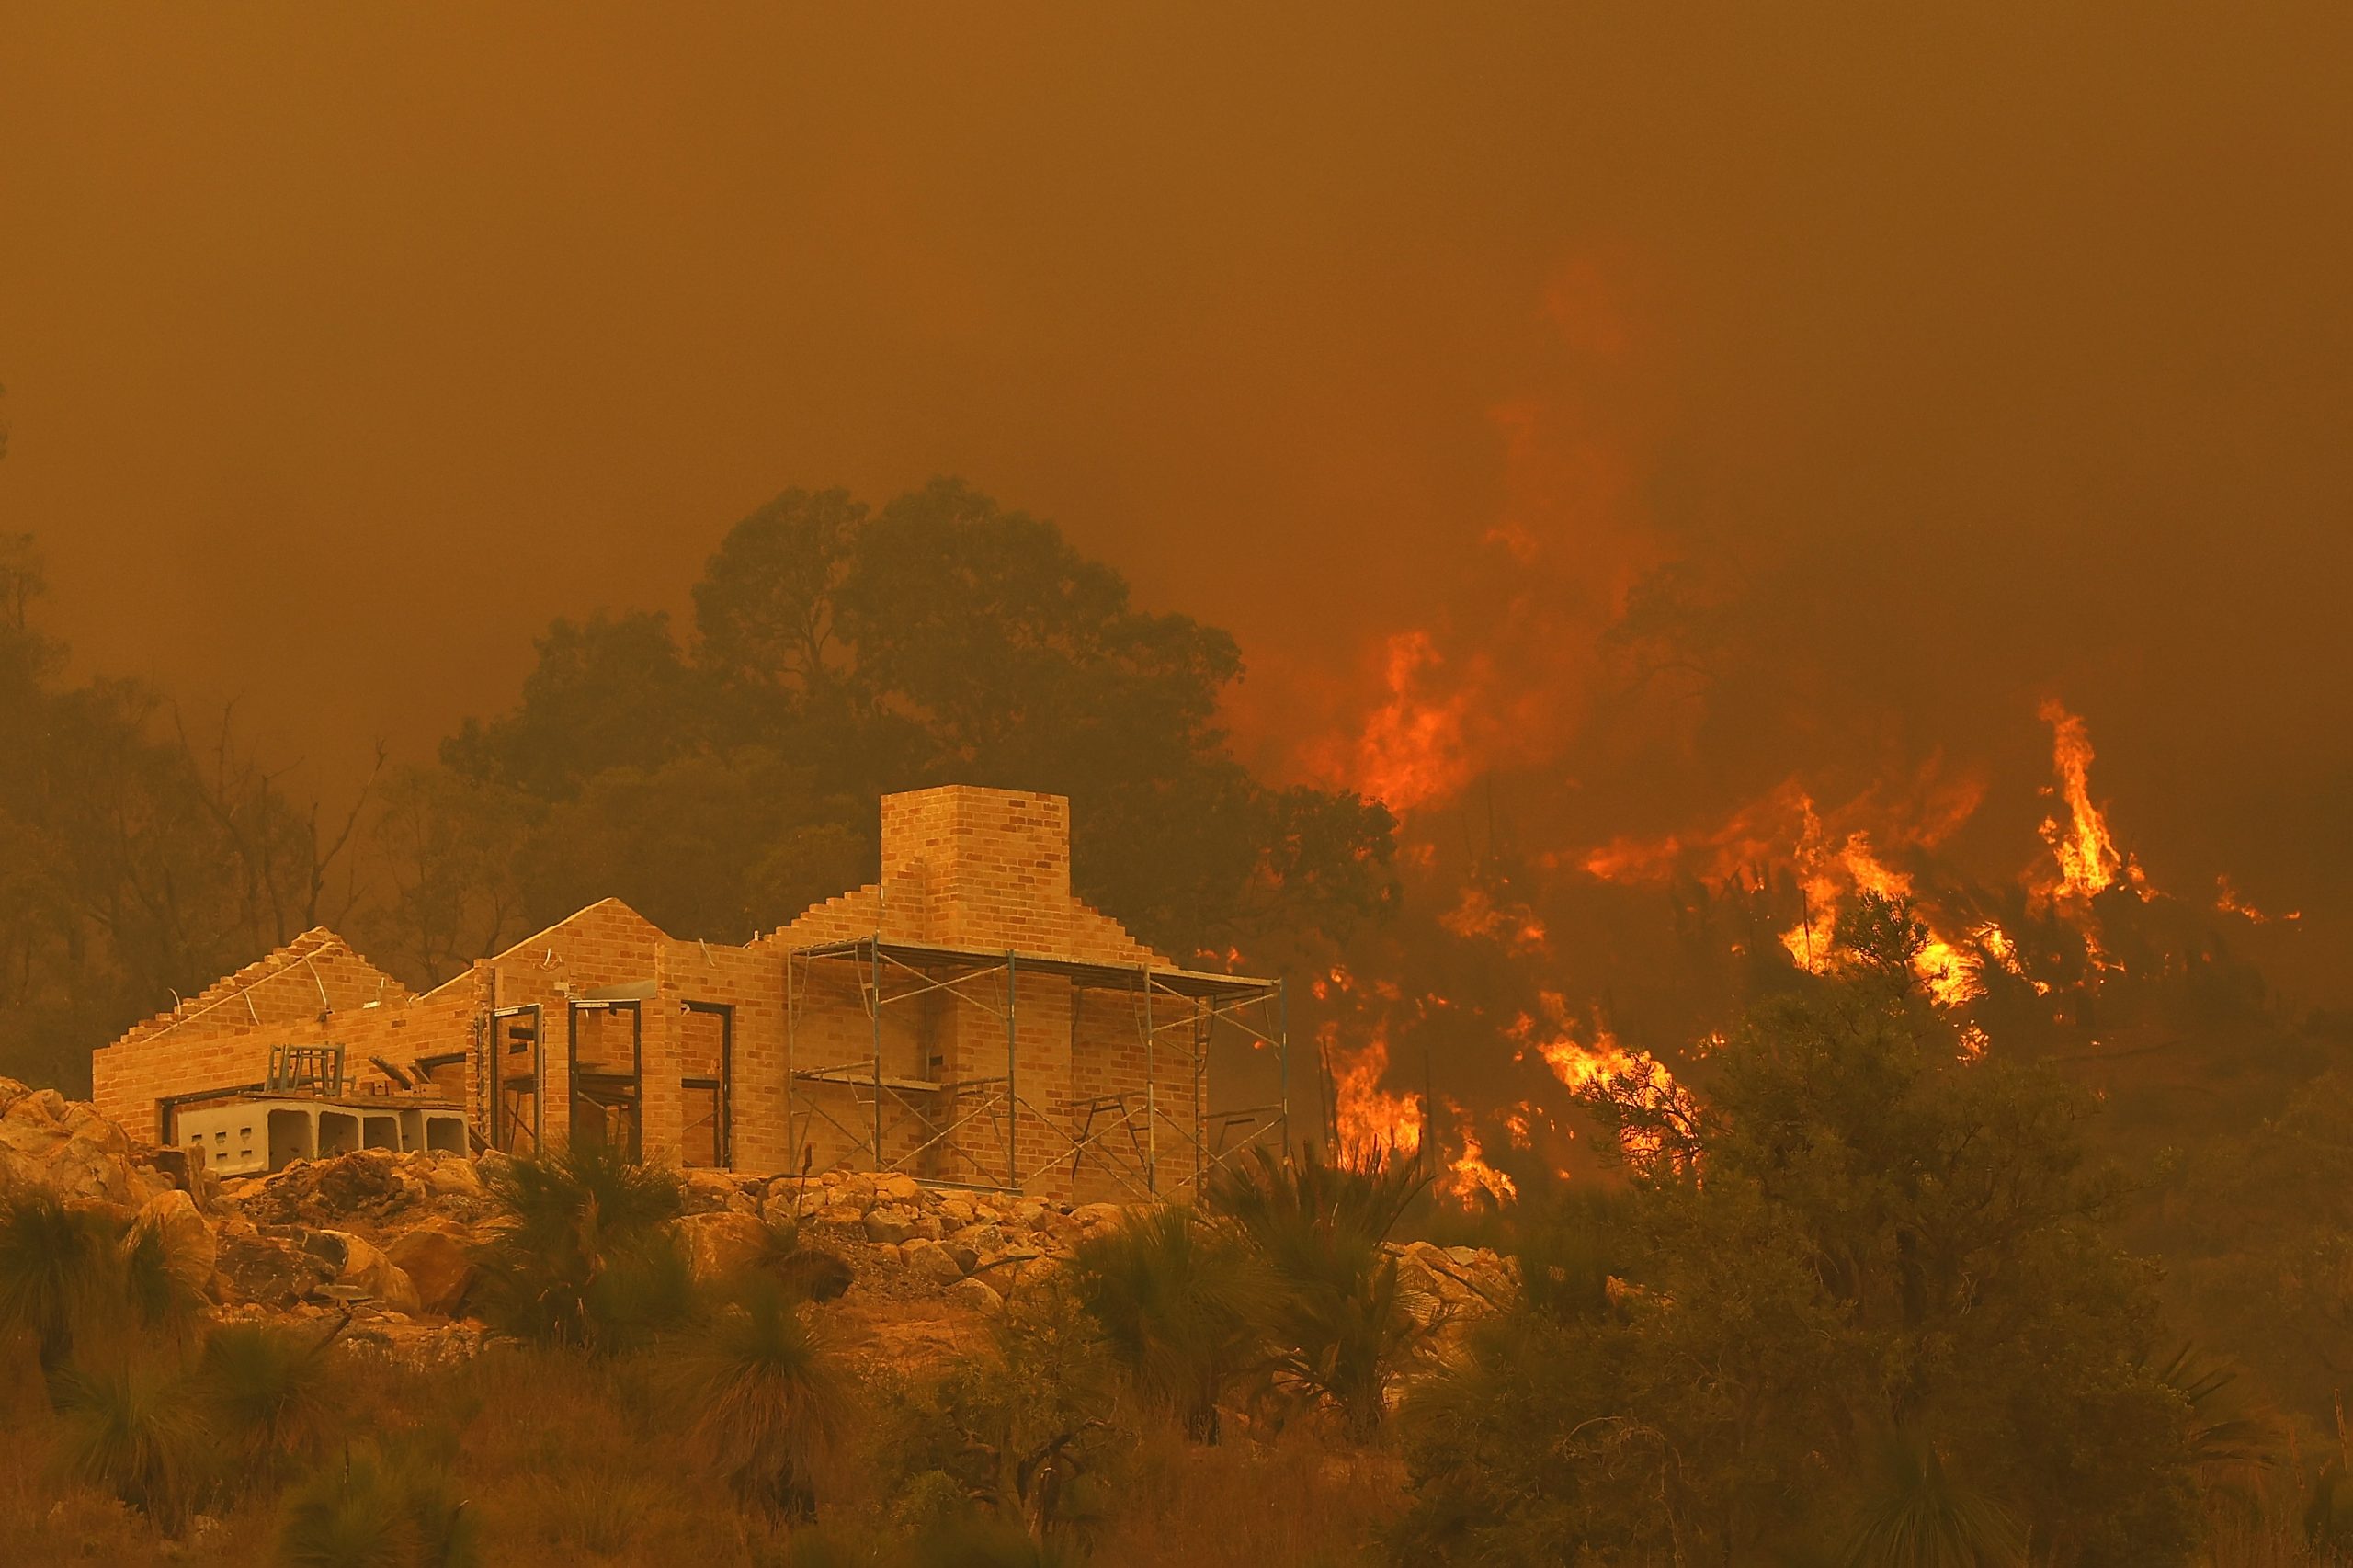 Western Australia warns of dangerous bushfire near Perth